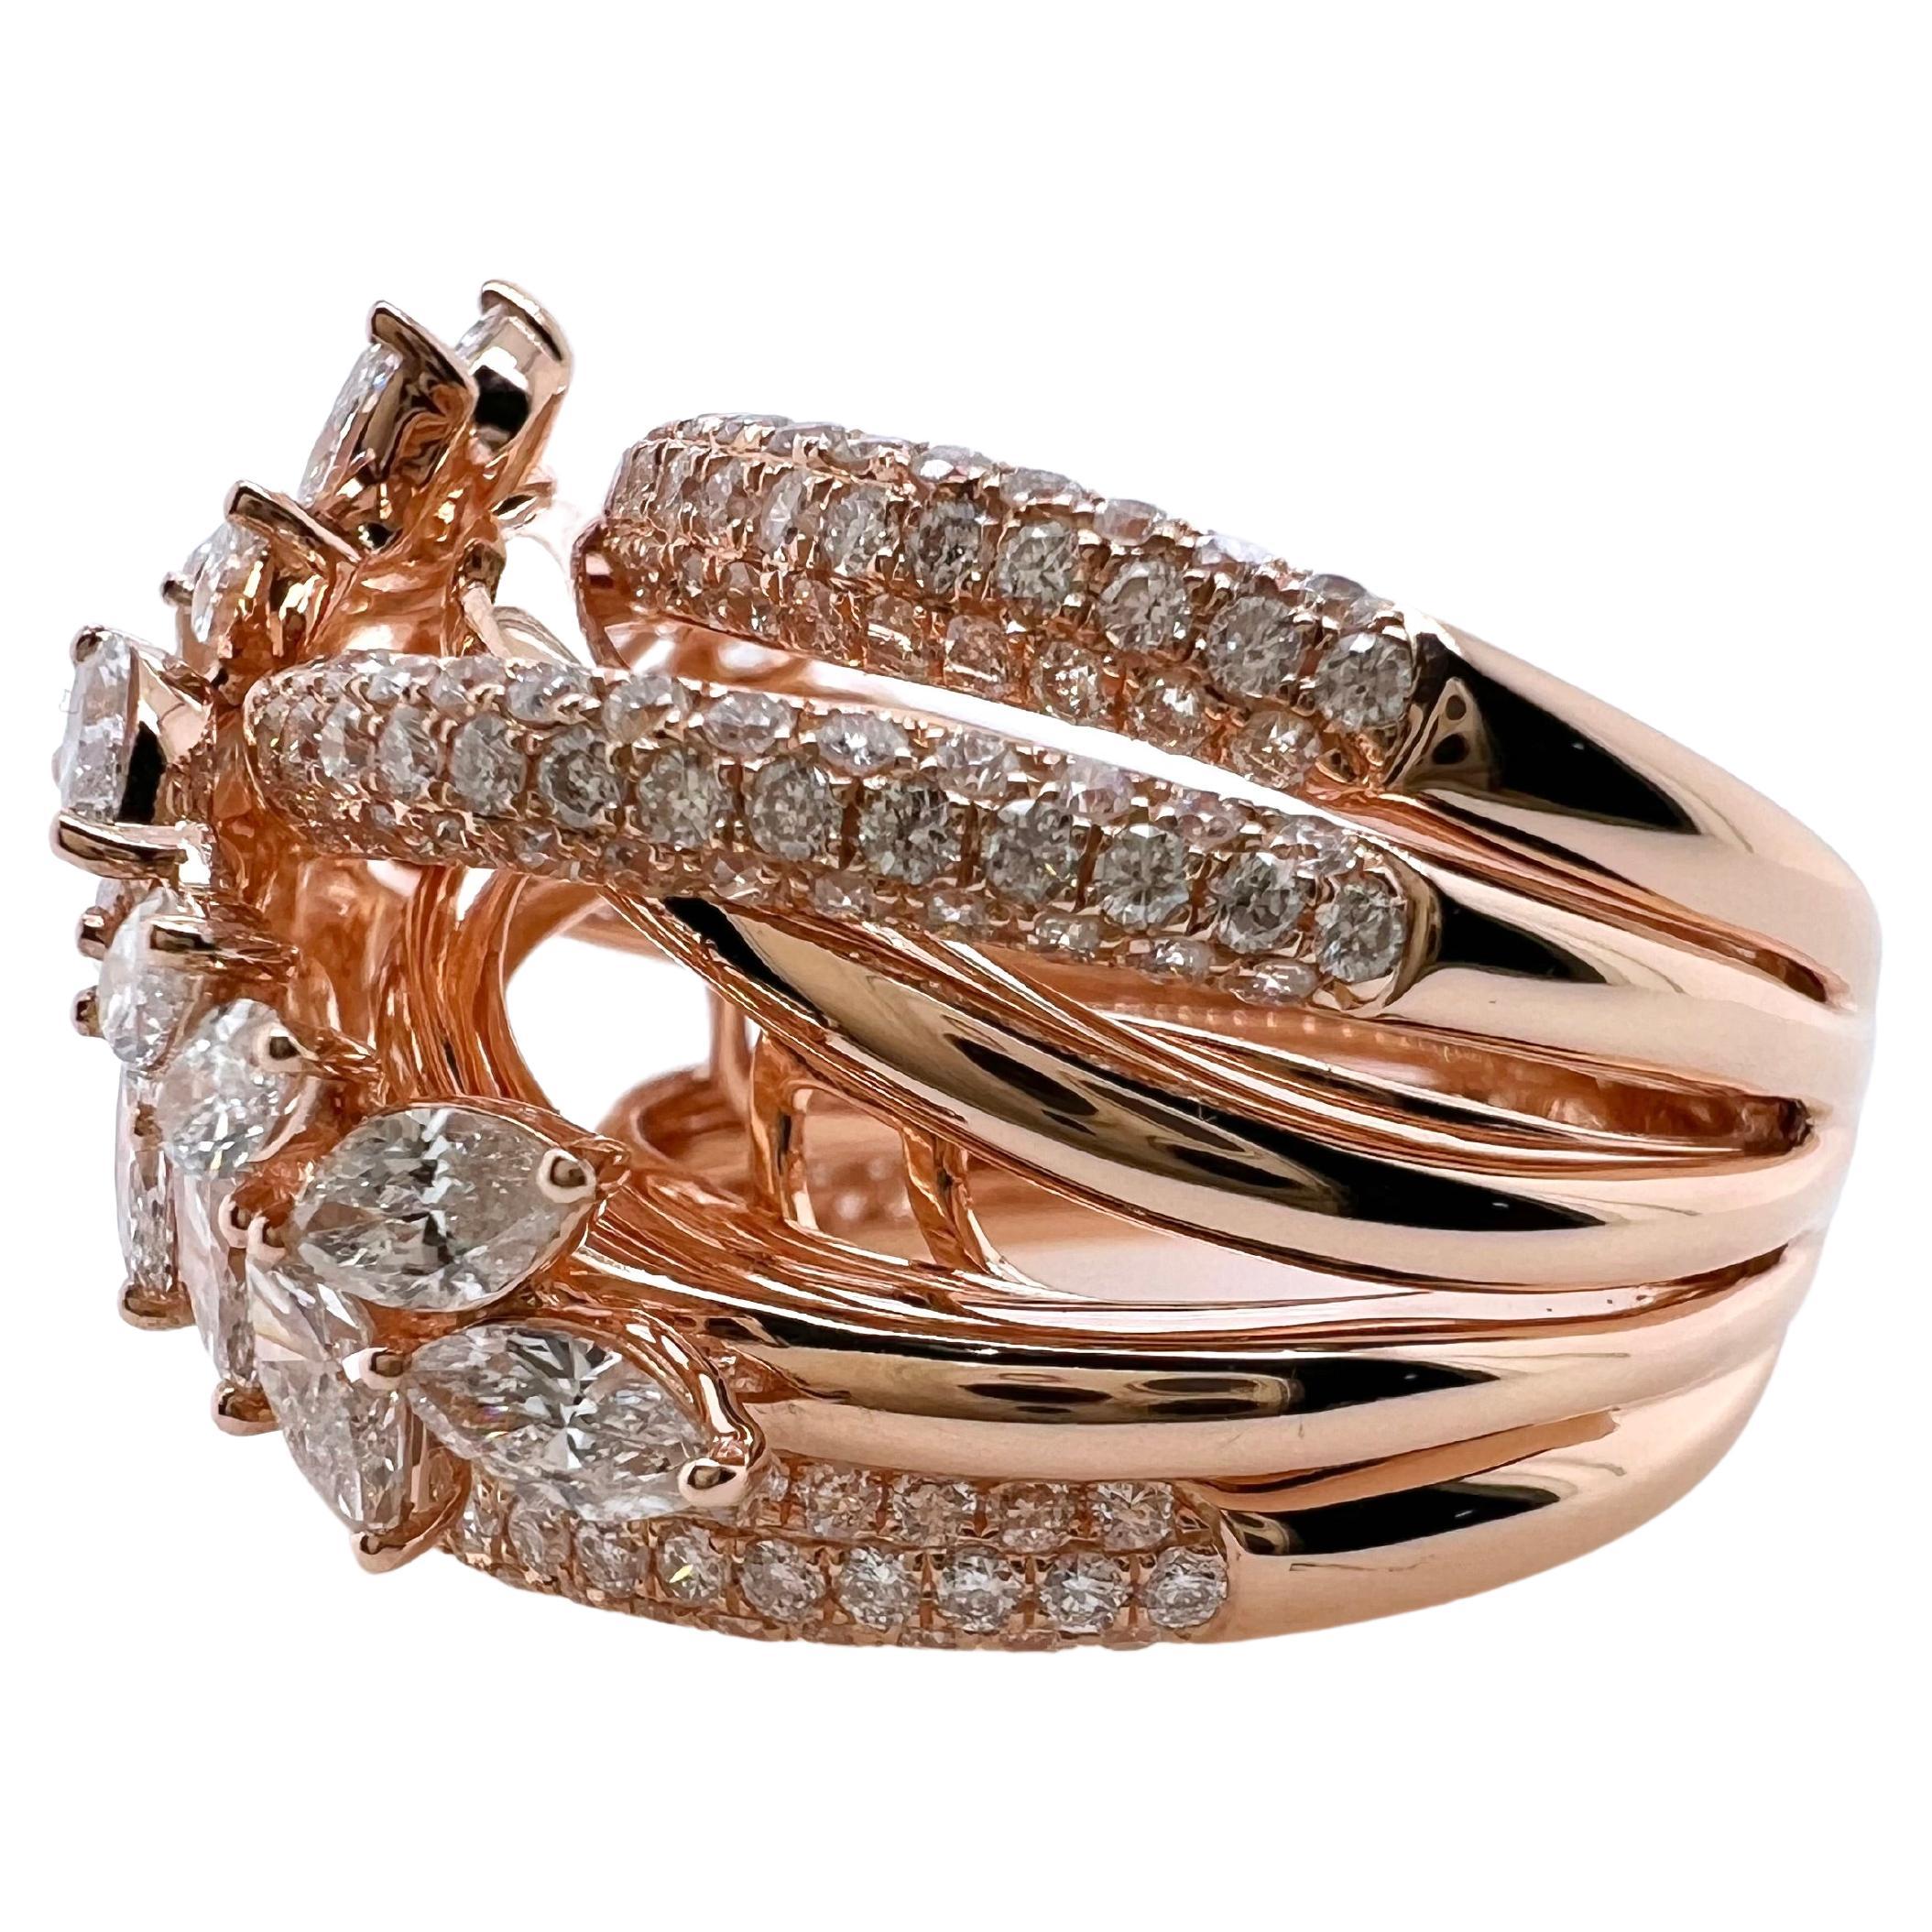 Das elegante Design dieses maßgefertigten Rings wird alle Blicke auf sich ziehen.  Die prächtigen Marquise-Diamanten sind in einer Art Kranz gefasst, der auf Reihen von runden Brillantbändern sitzt.  Das Profil sitzt höher und verleiht ihm eine